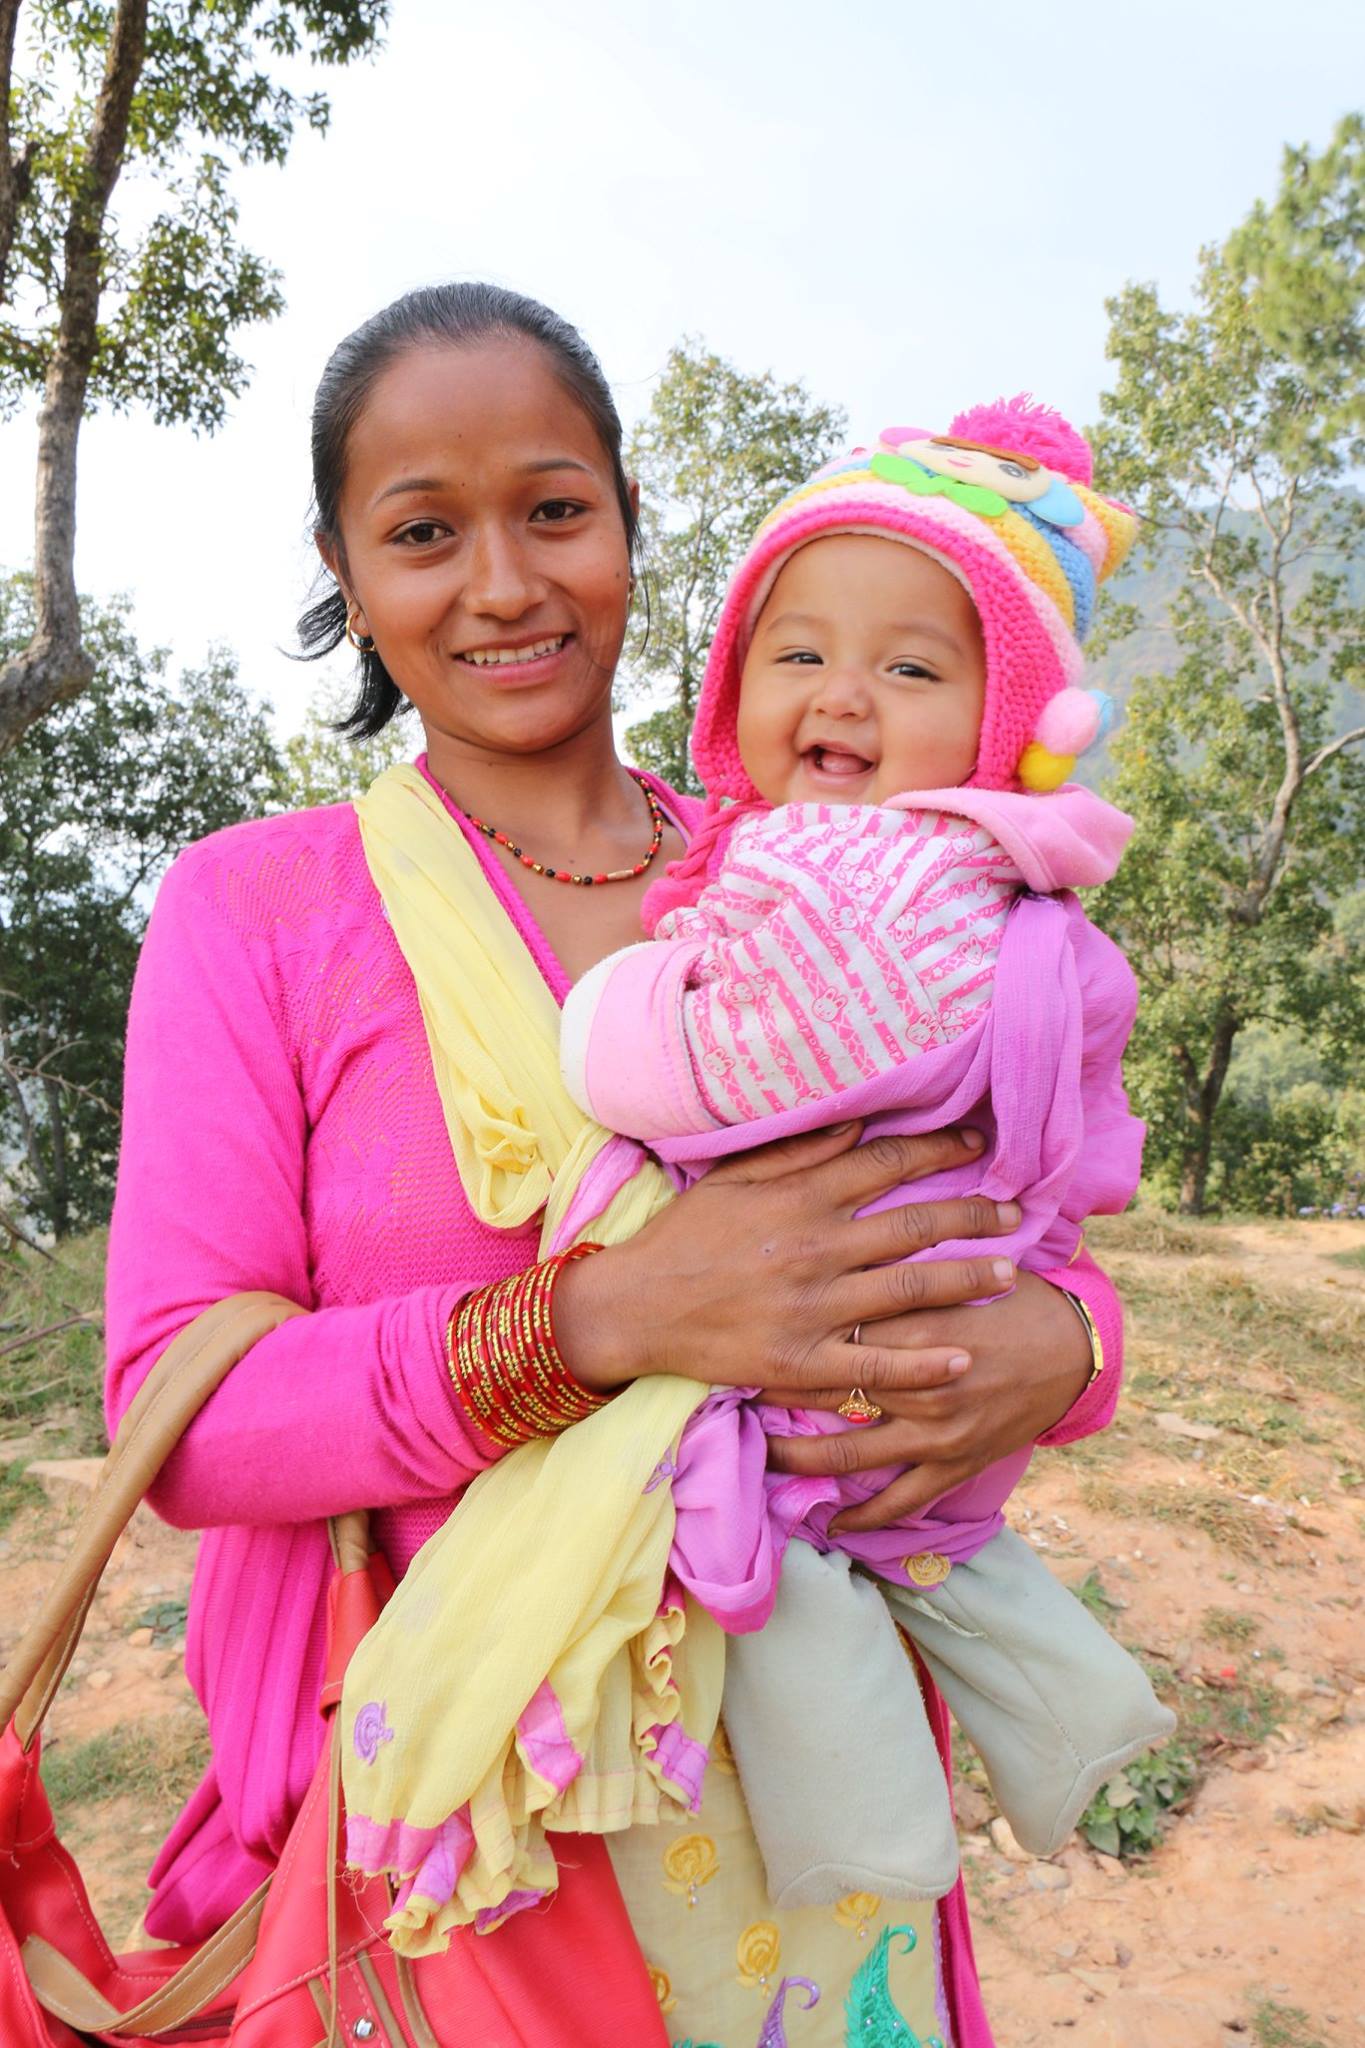 Die junge Mutter Rita lebt seit dem Beben in einer Notunterkunft. Von World Vision bekam sie warmes Wintergewand für ihr Baby.